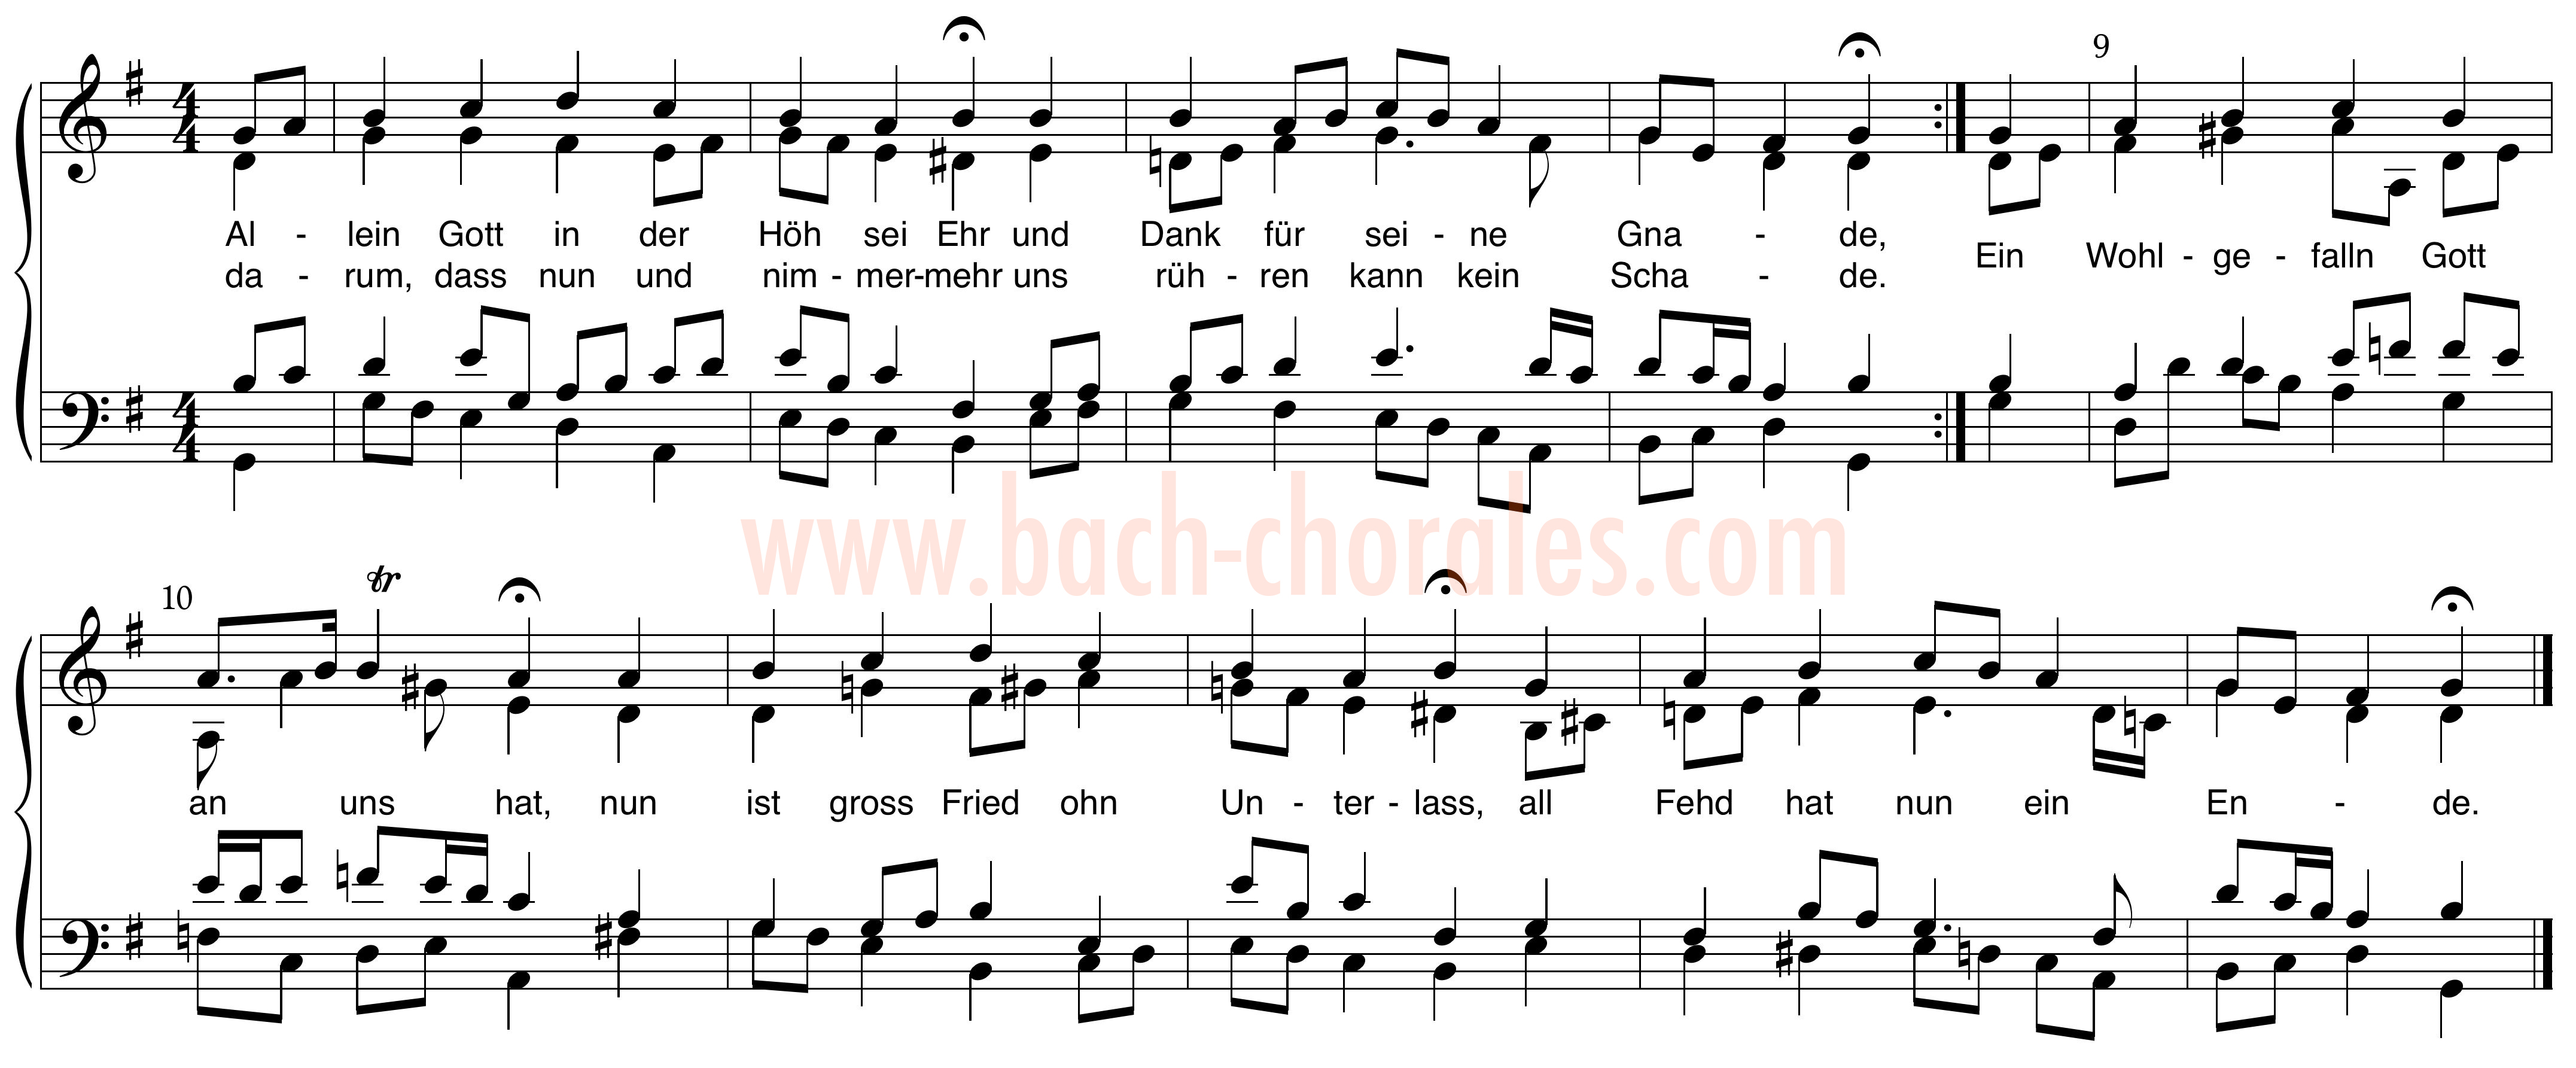 notenbeeld BWV 260 op https://www.bach-chorales.com/